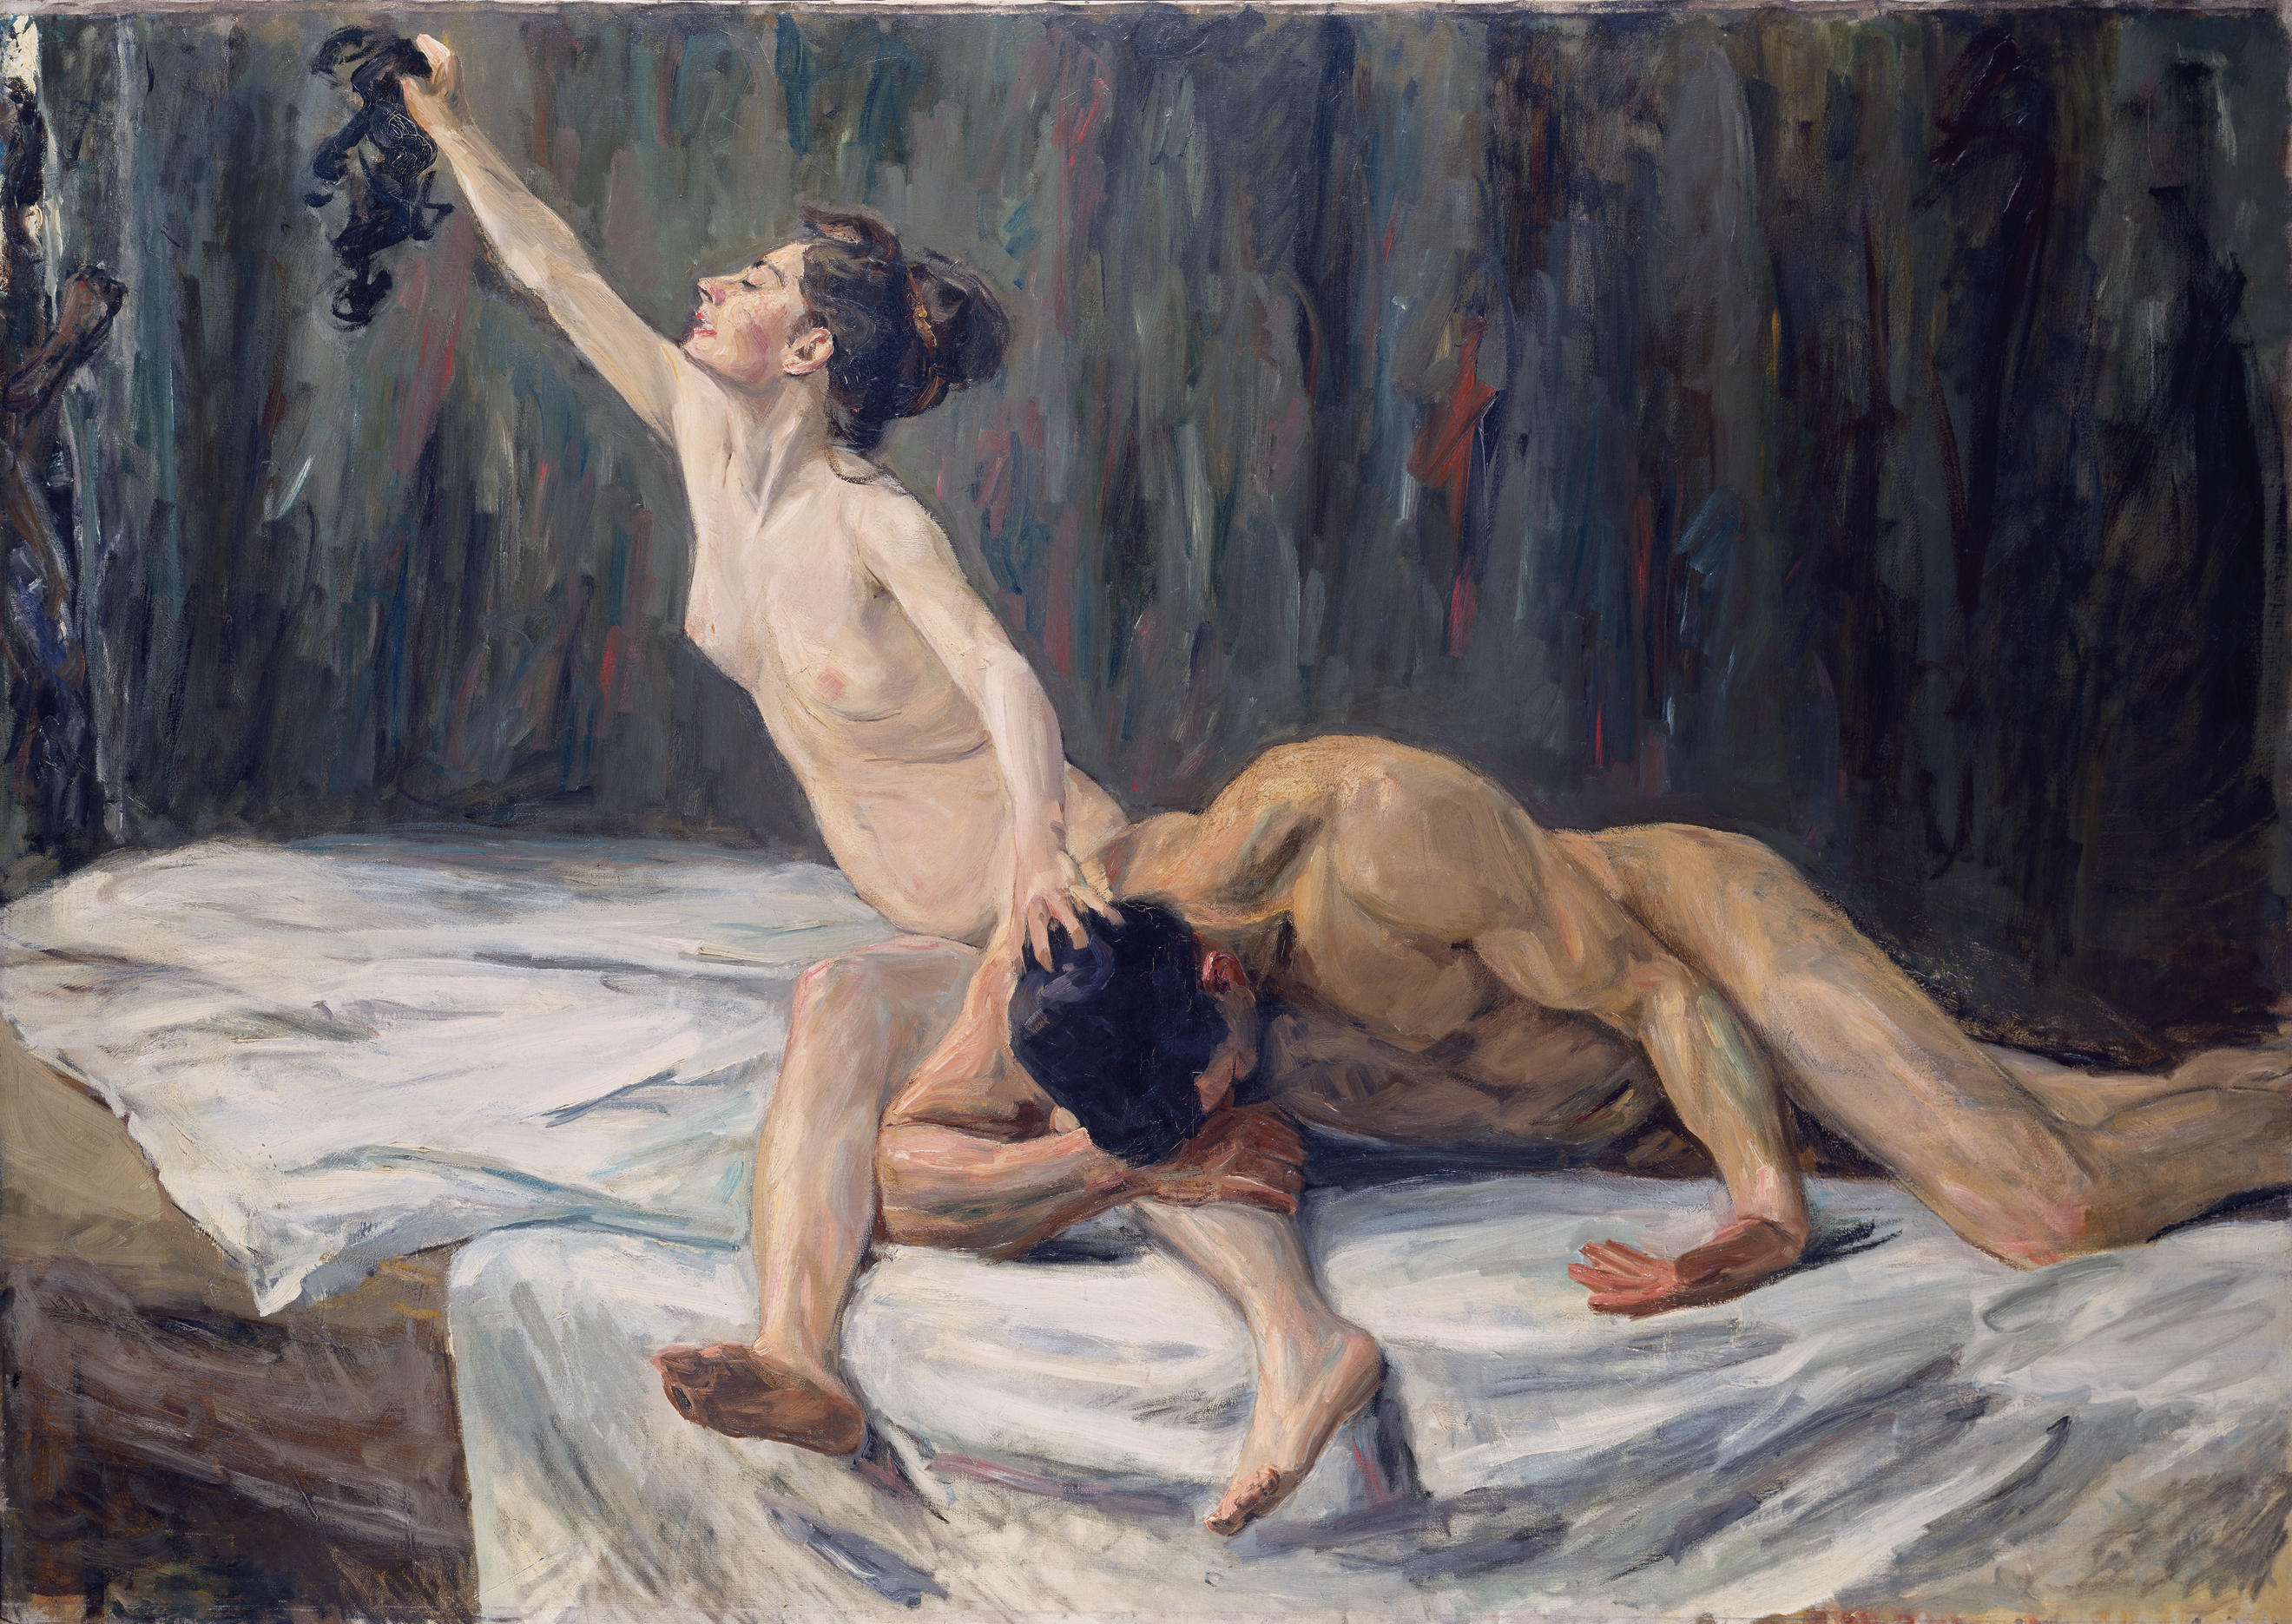 Sansón y Dalila by Max Liebermann - 1902 - 151,2 x 212,0 cm Museo Städel